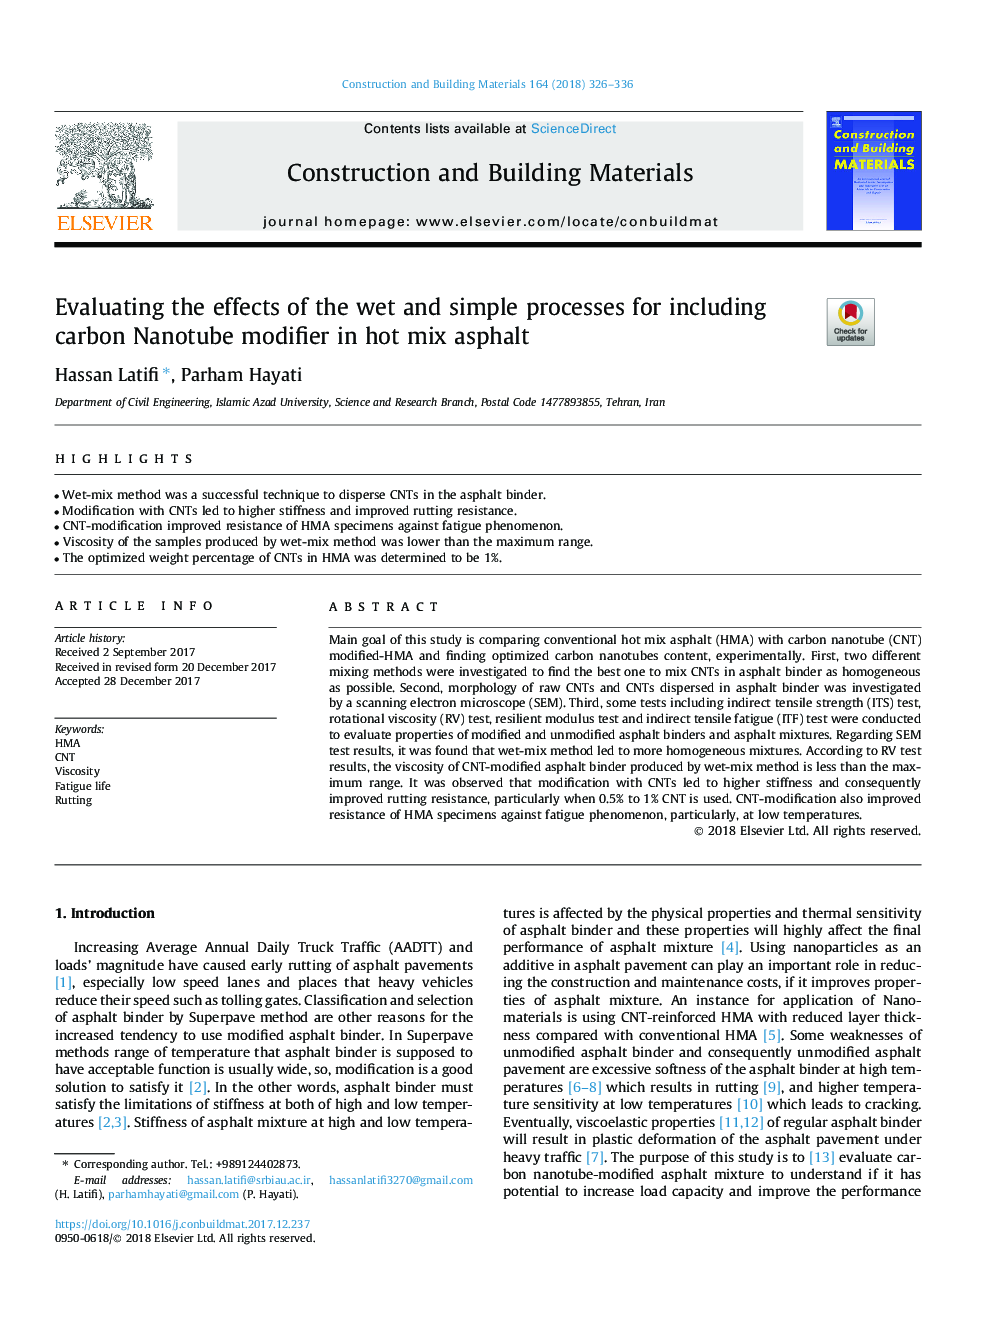 ارزیابی اثرات فرآیندهای مرطوب و ساده برای افزودن اصلاح کننده نانولوله کربن در آسفالت داغ 